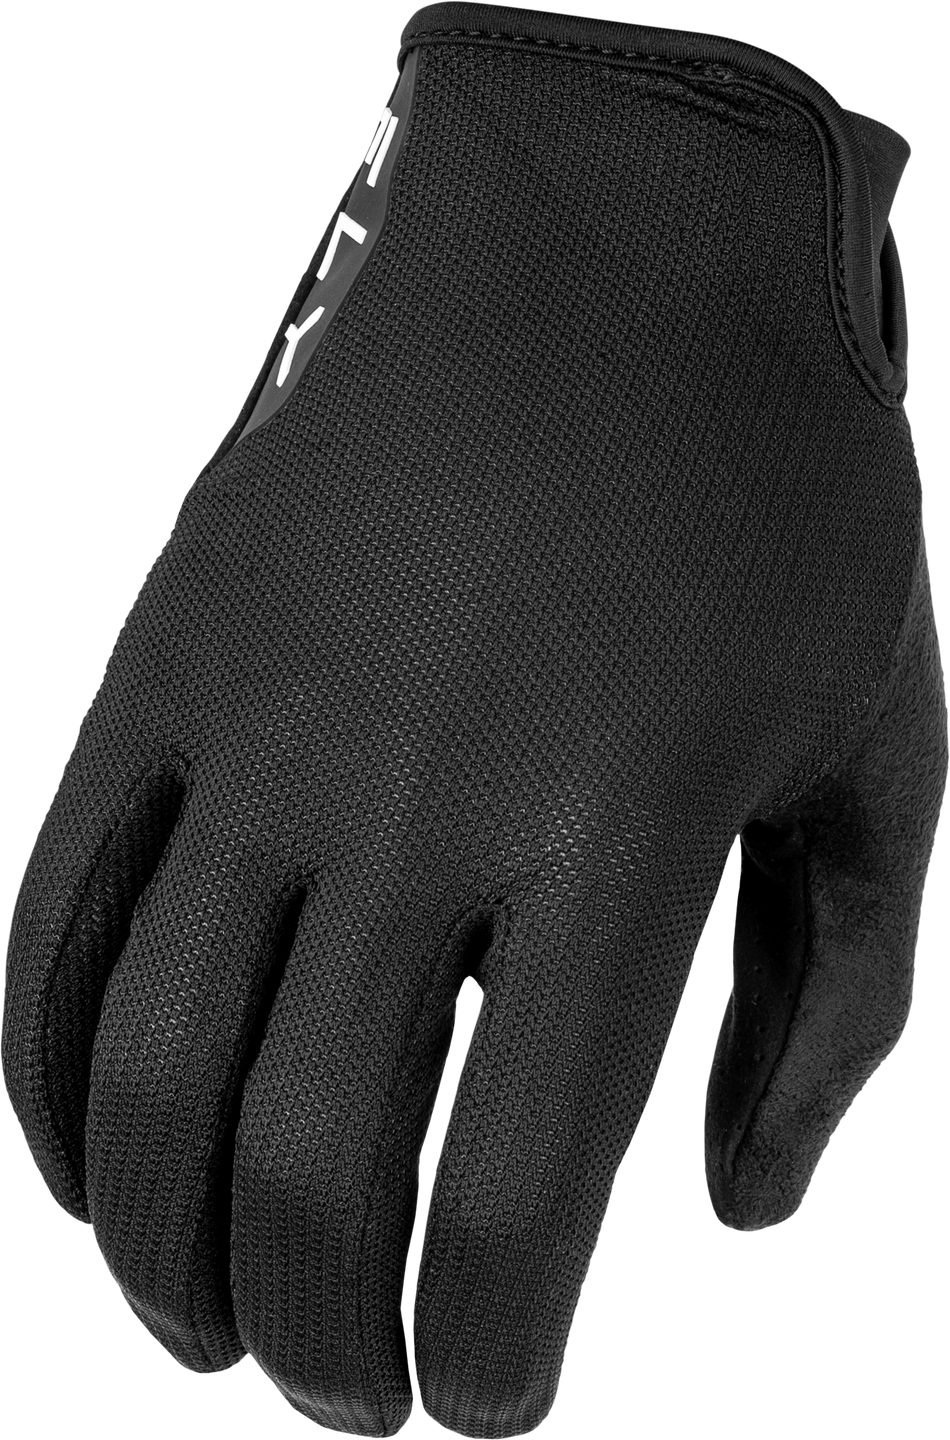 FLY RACING Mesh Gloves Black 3x 375-3303X